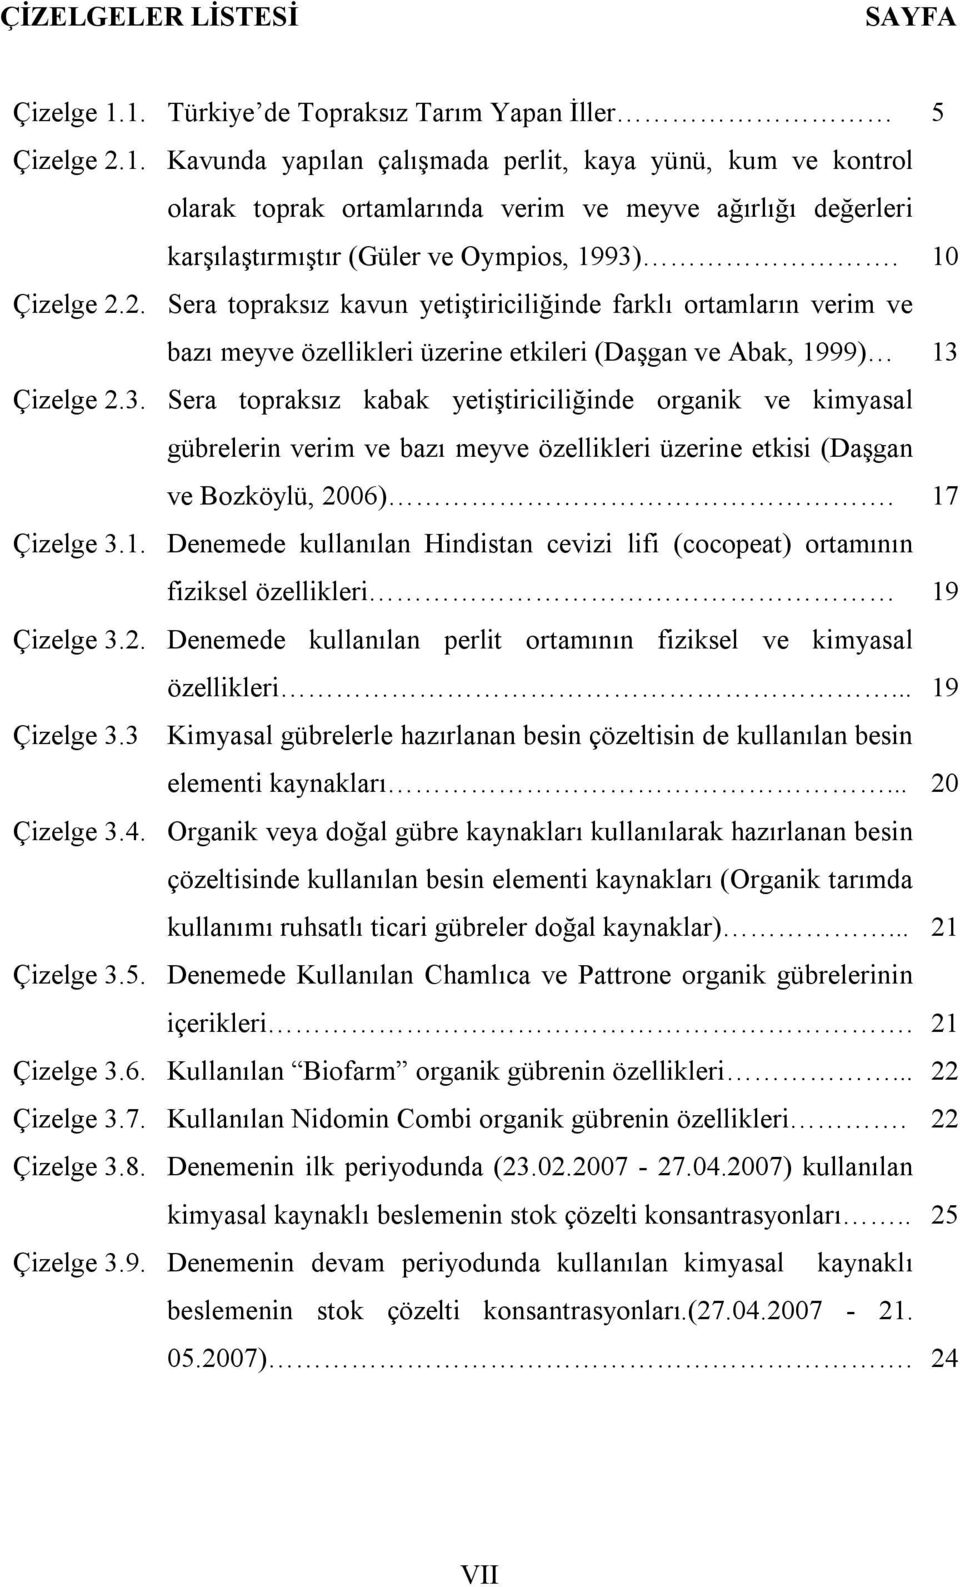 Çizelge 2.3. Sera topraksız kabak yetiştiriciliğinde organik ve kimyasal gübrelerin verim ve bazı meyve özellikleri üzerine etkisi (Daşgan ve Bozköylü, 2006). 17